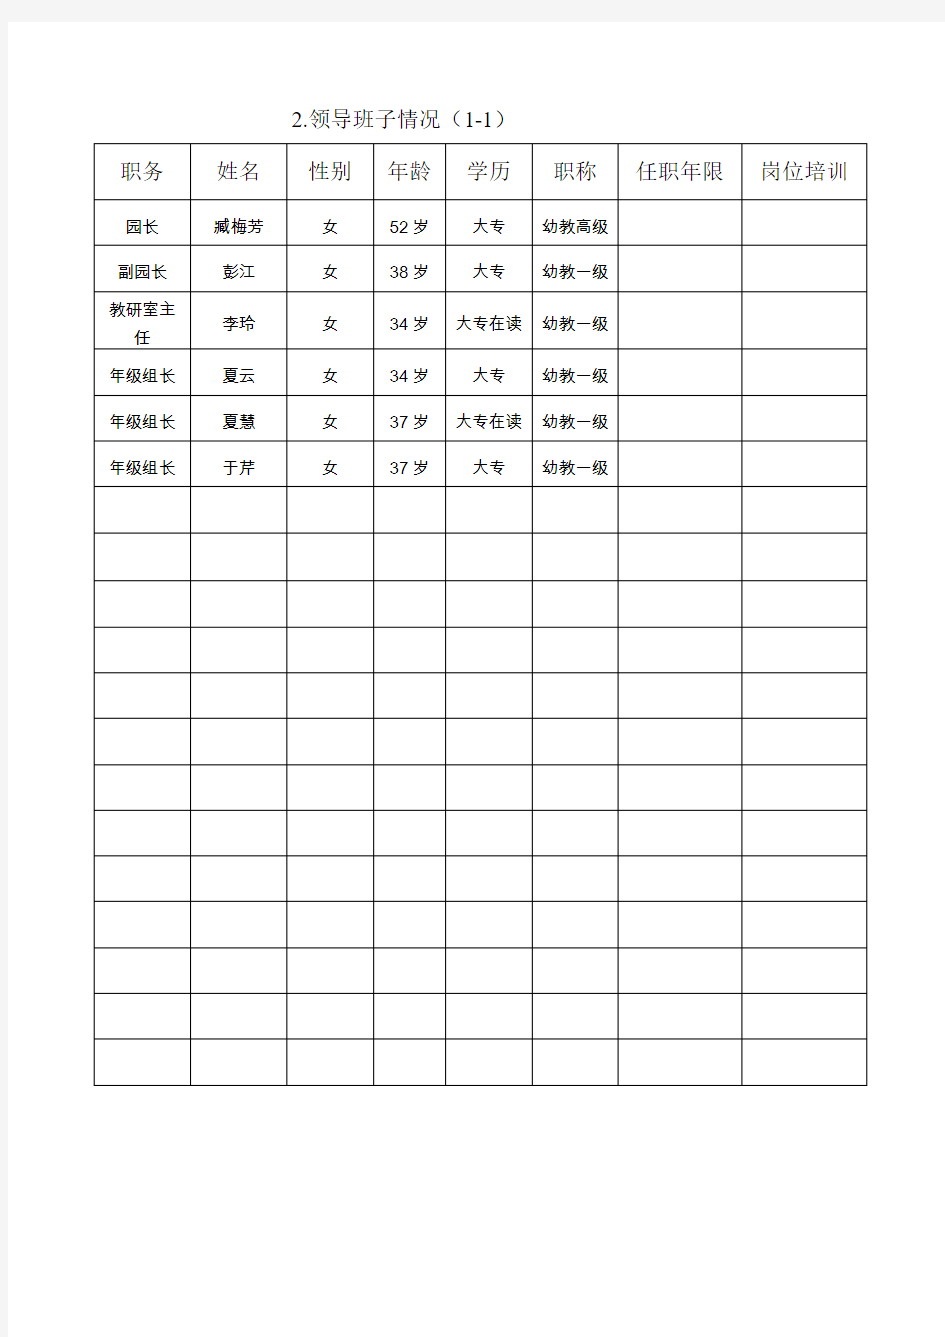 江苏省优质幼儿园评估基础数据统计表最新文档资料